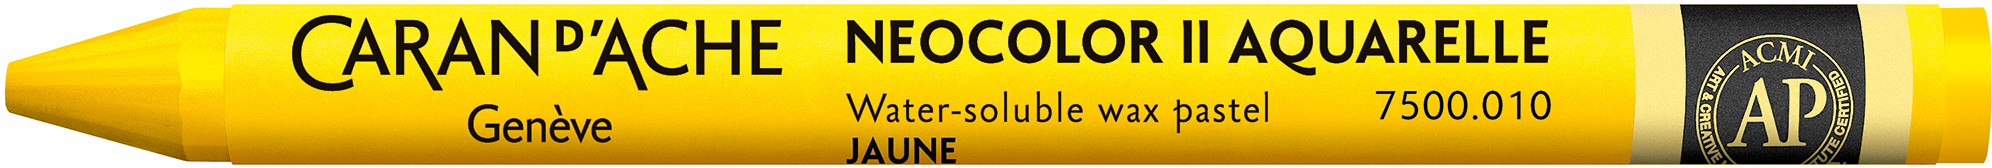 CARAN D'ACHE Crayons de cire Neocolor II 7500.010 jaune jaune